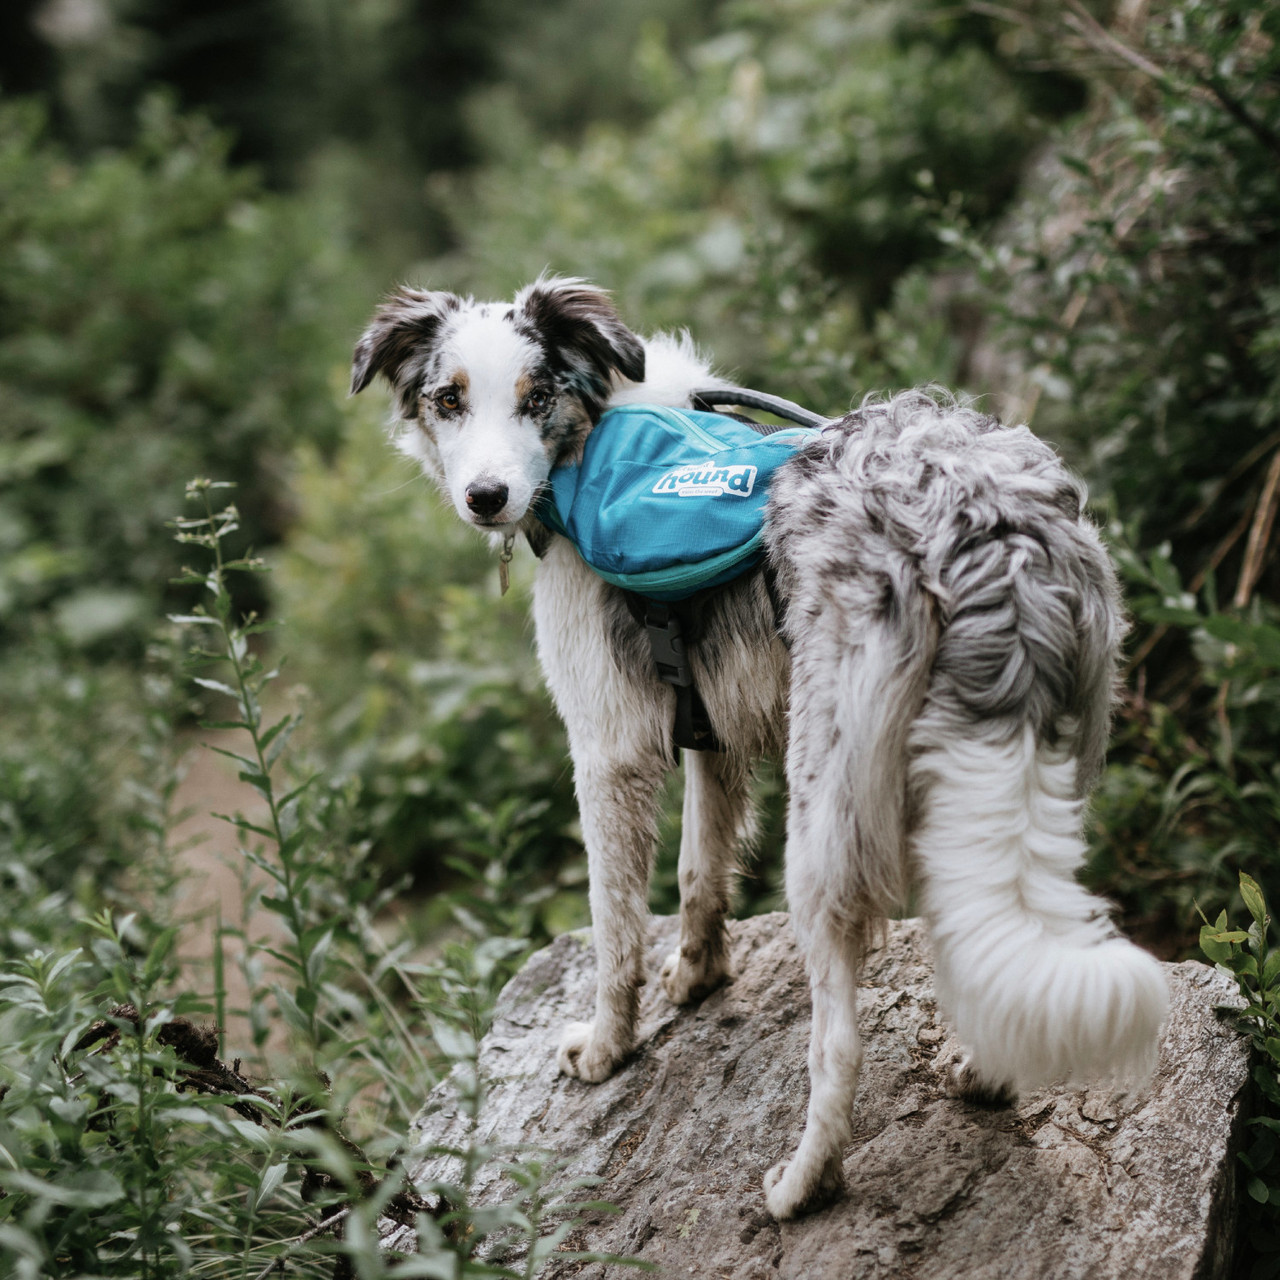 Outward Hound DayPak Green Dog Saddleback Backpack, Medium